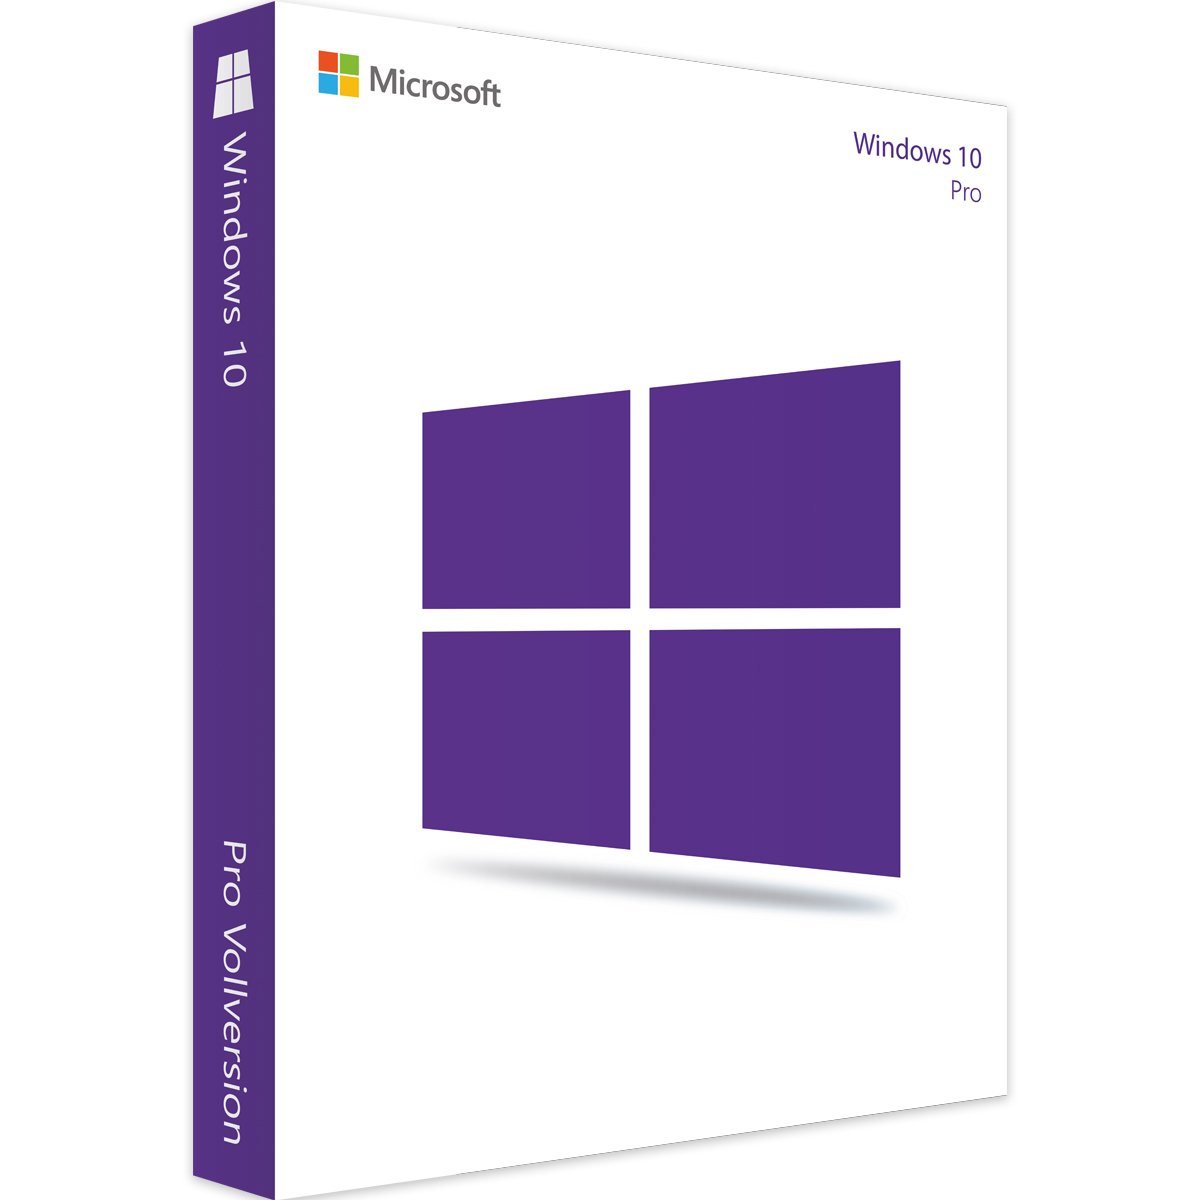 Licencia OEM Windows 10: La Clave para un Rendimiento Óptimo